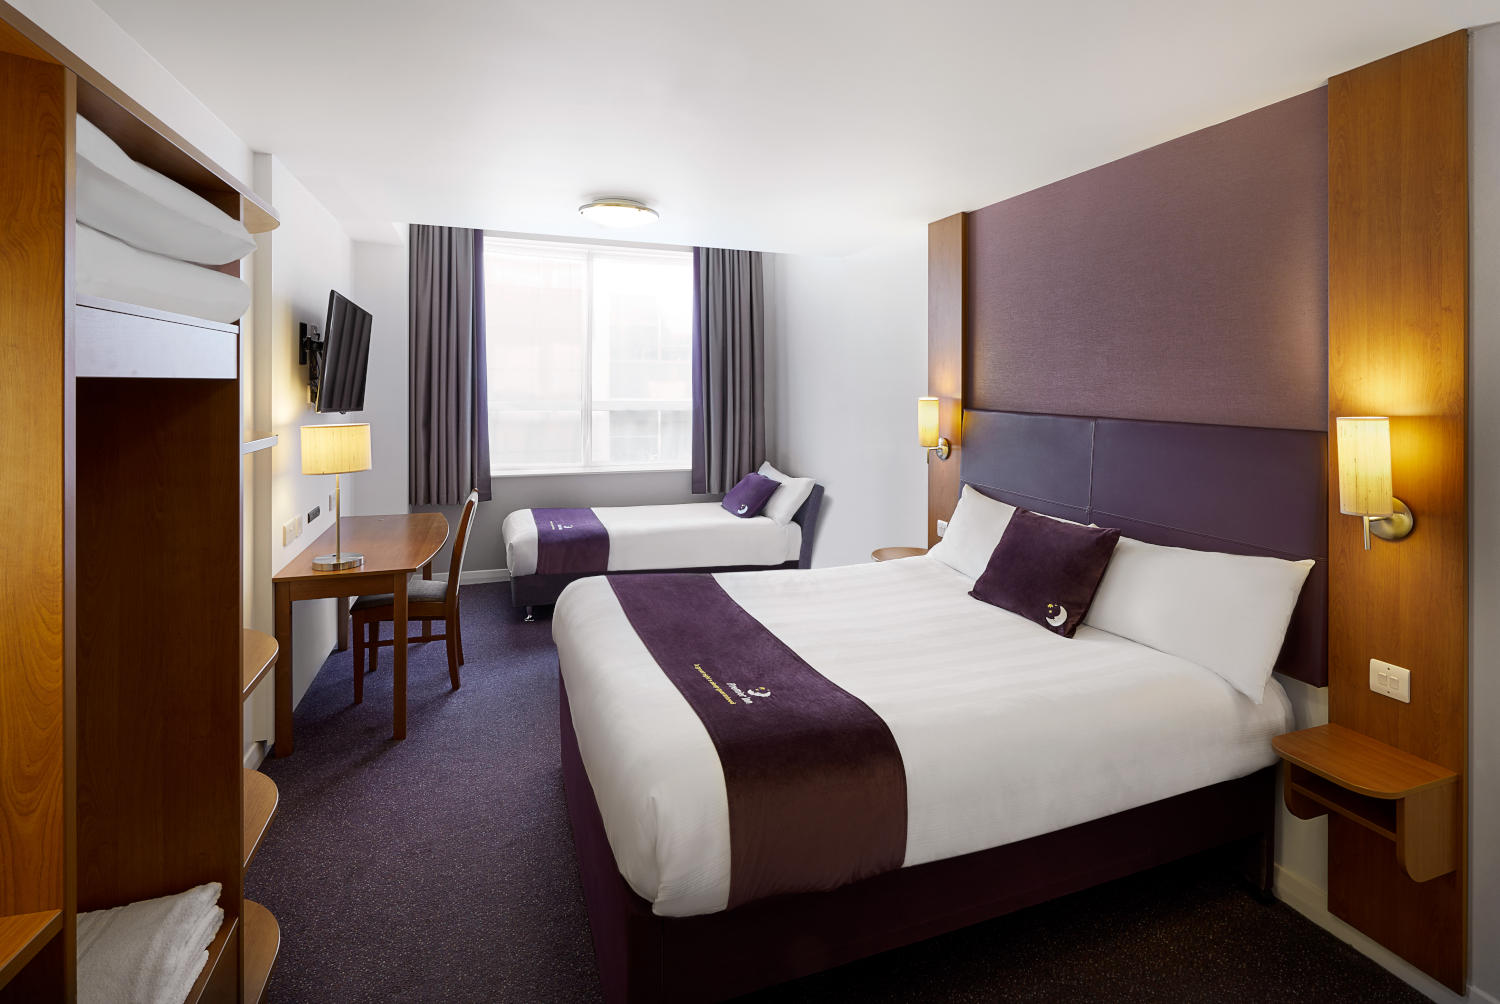 Premier Inn bedroom Premier Inn Corby hotel Kettering 03337 774625